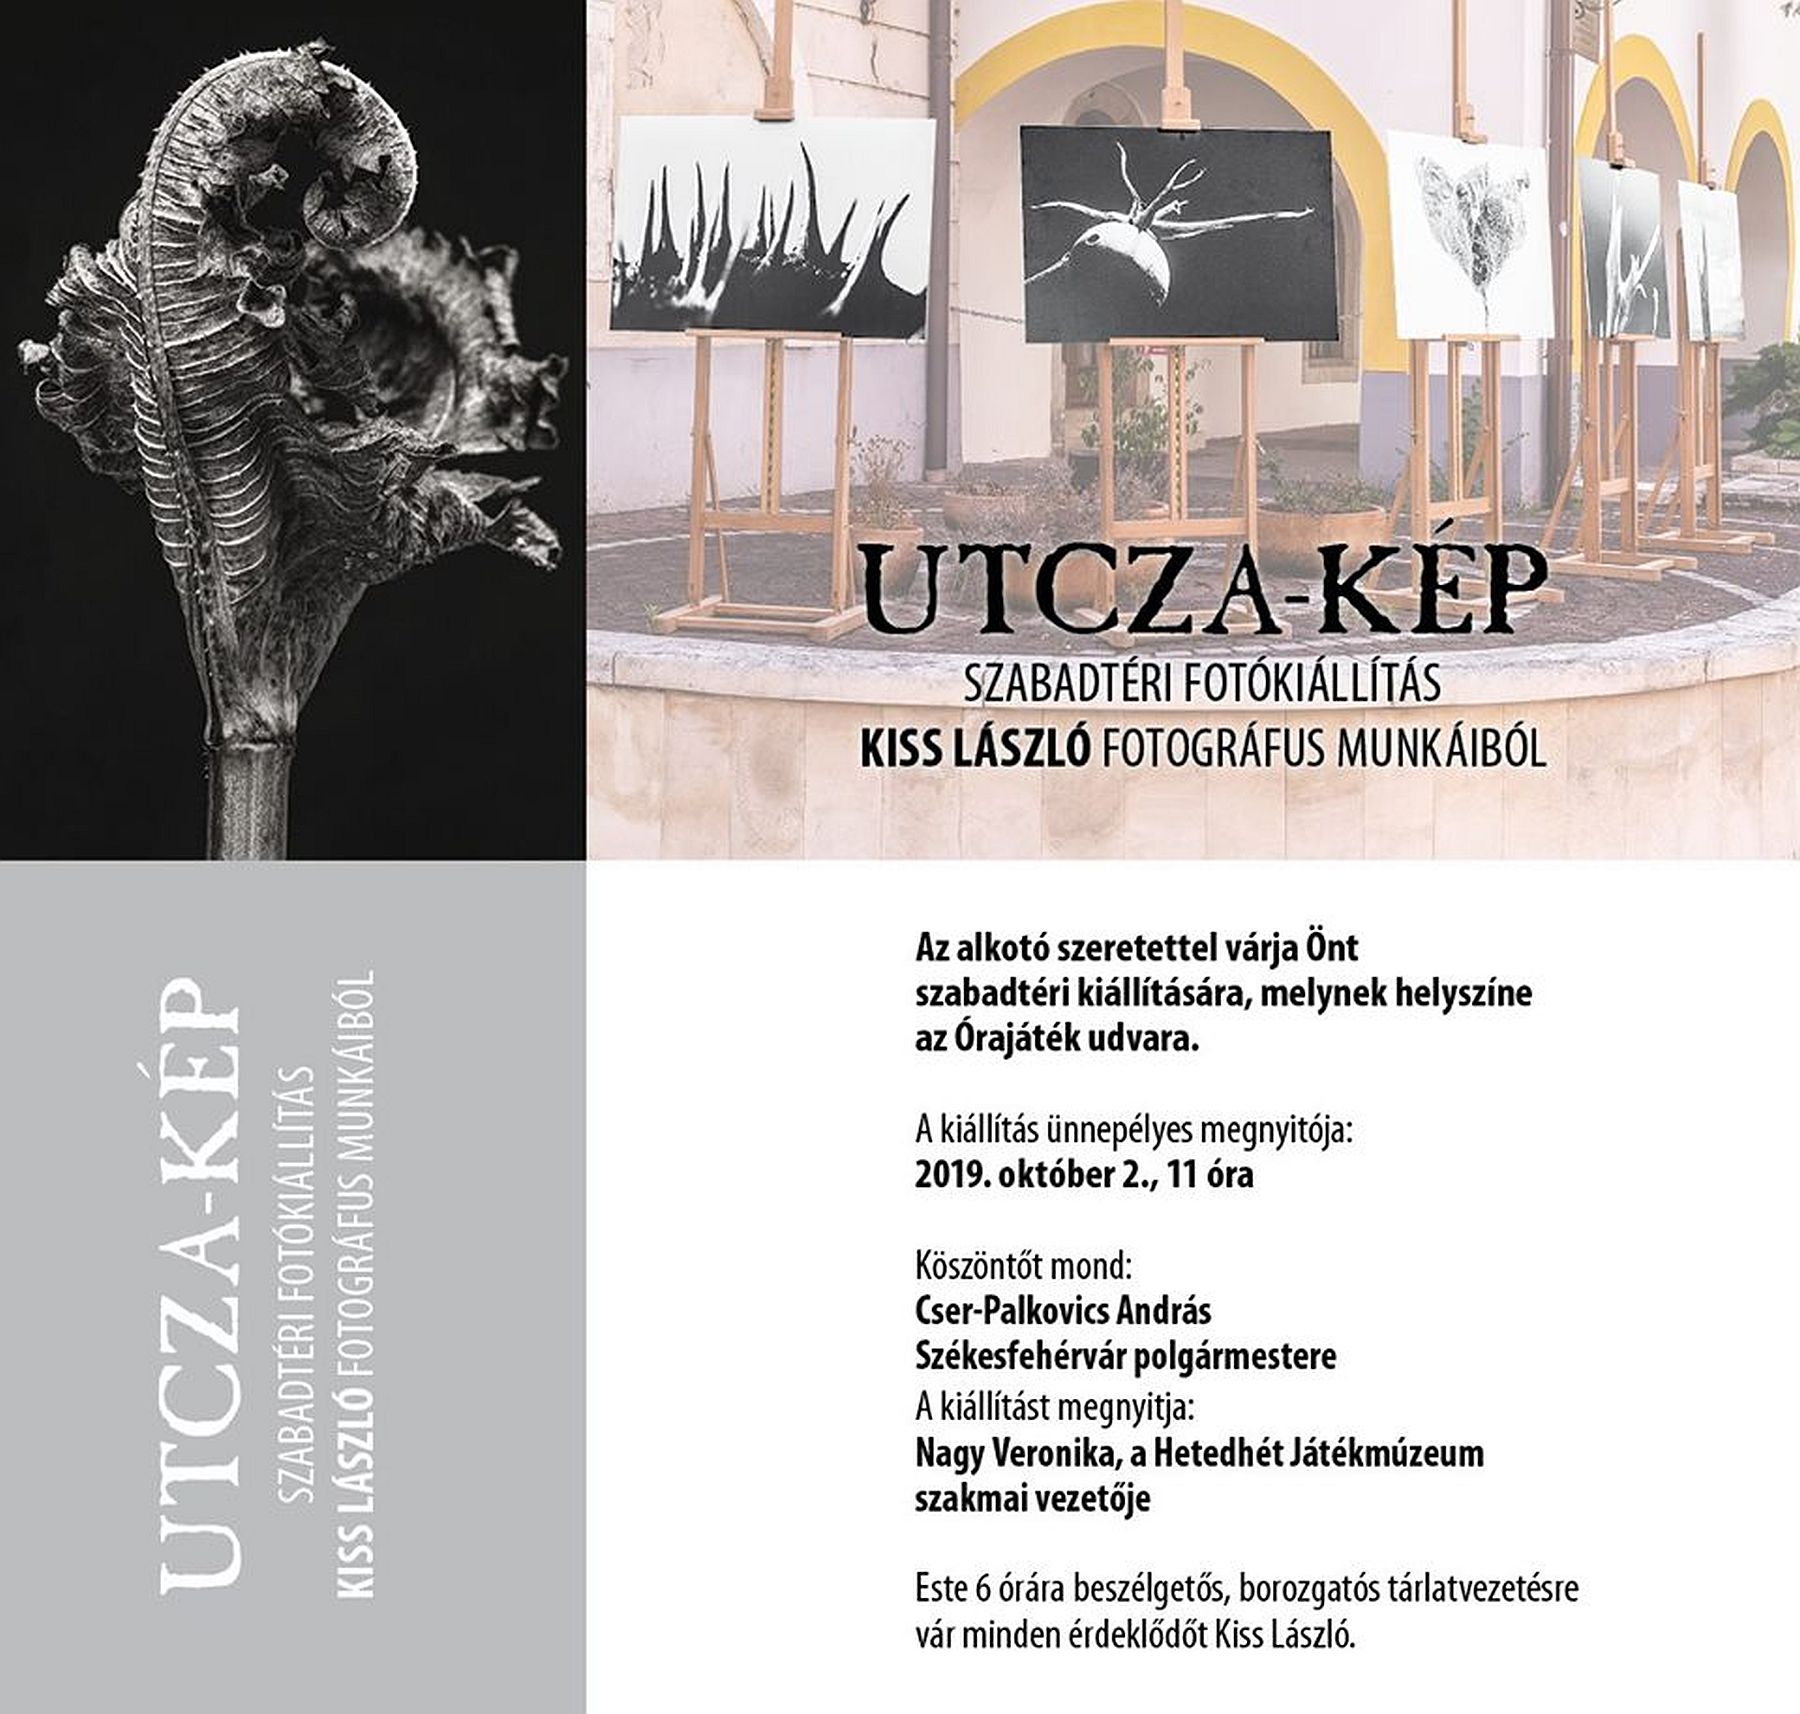 Utcza-kép – szabadtéri kiállítás nyílik Kiss László, fotográfus munkáiból